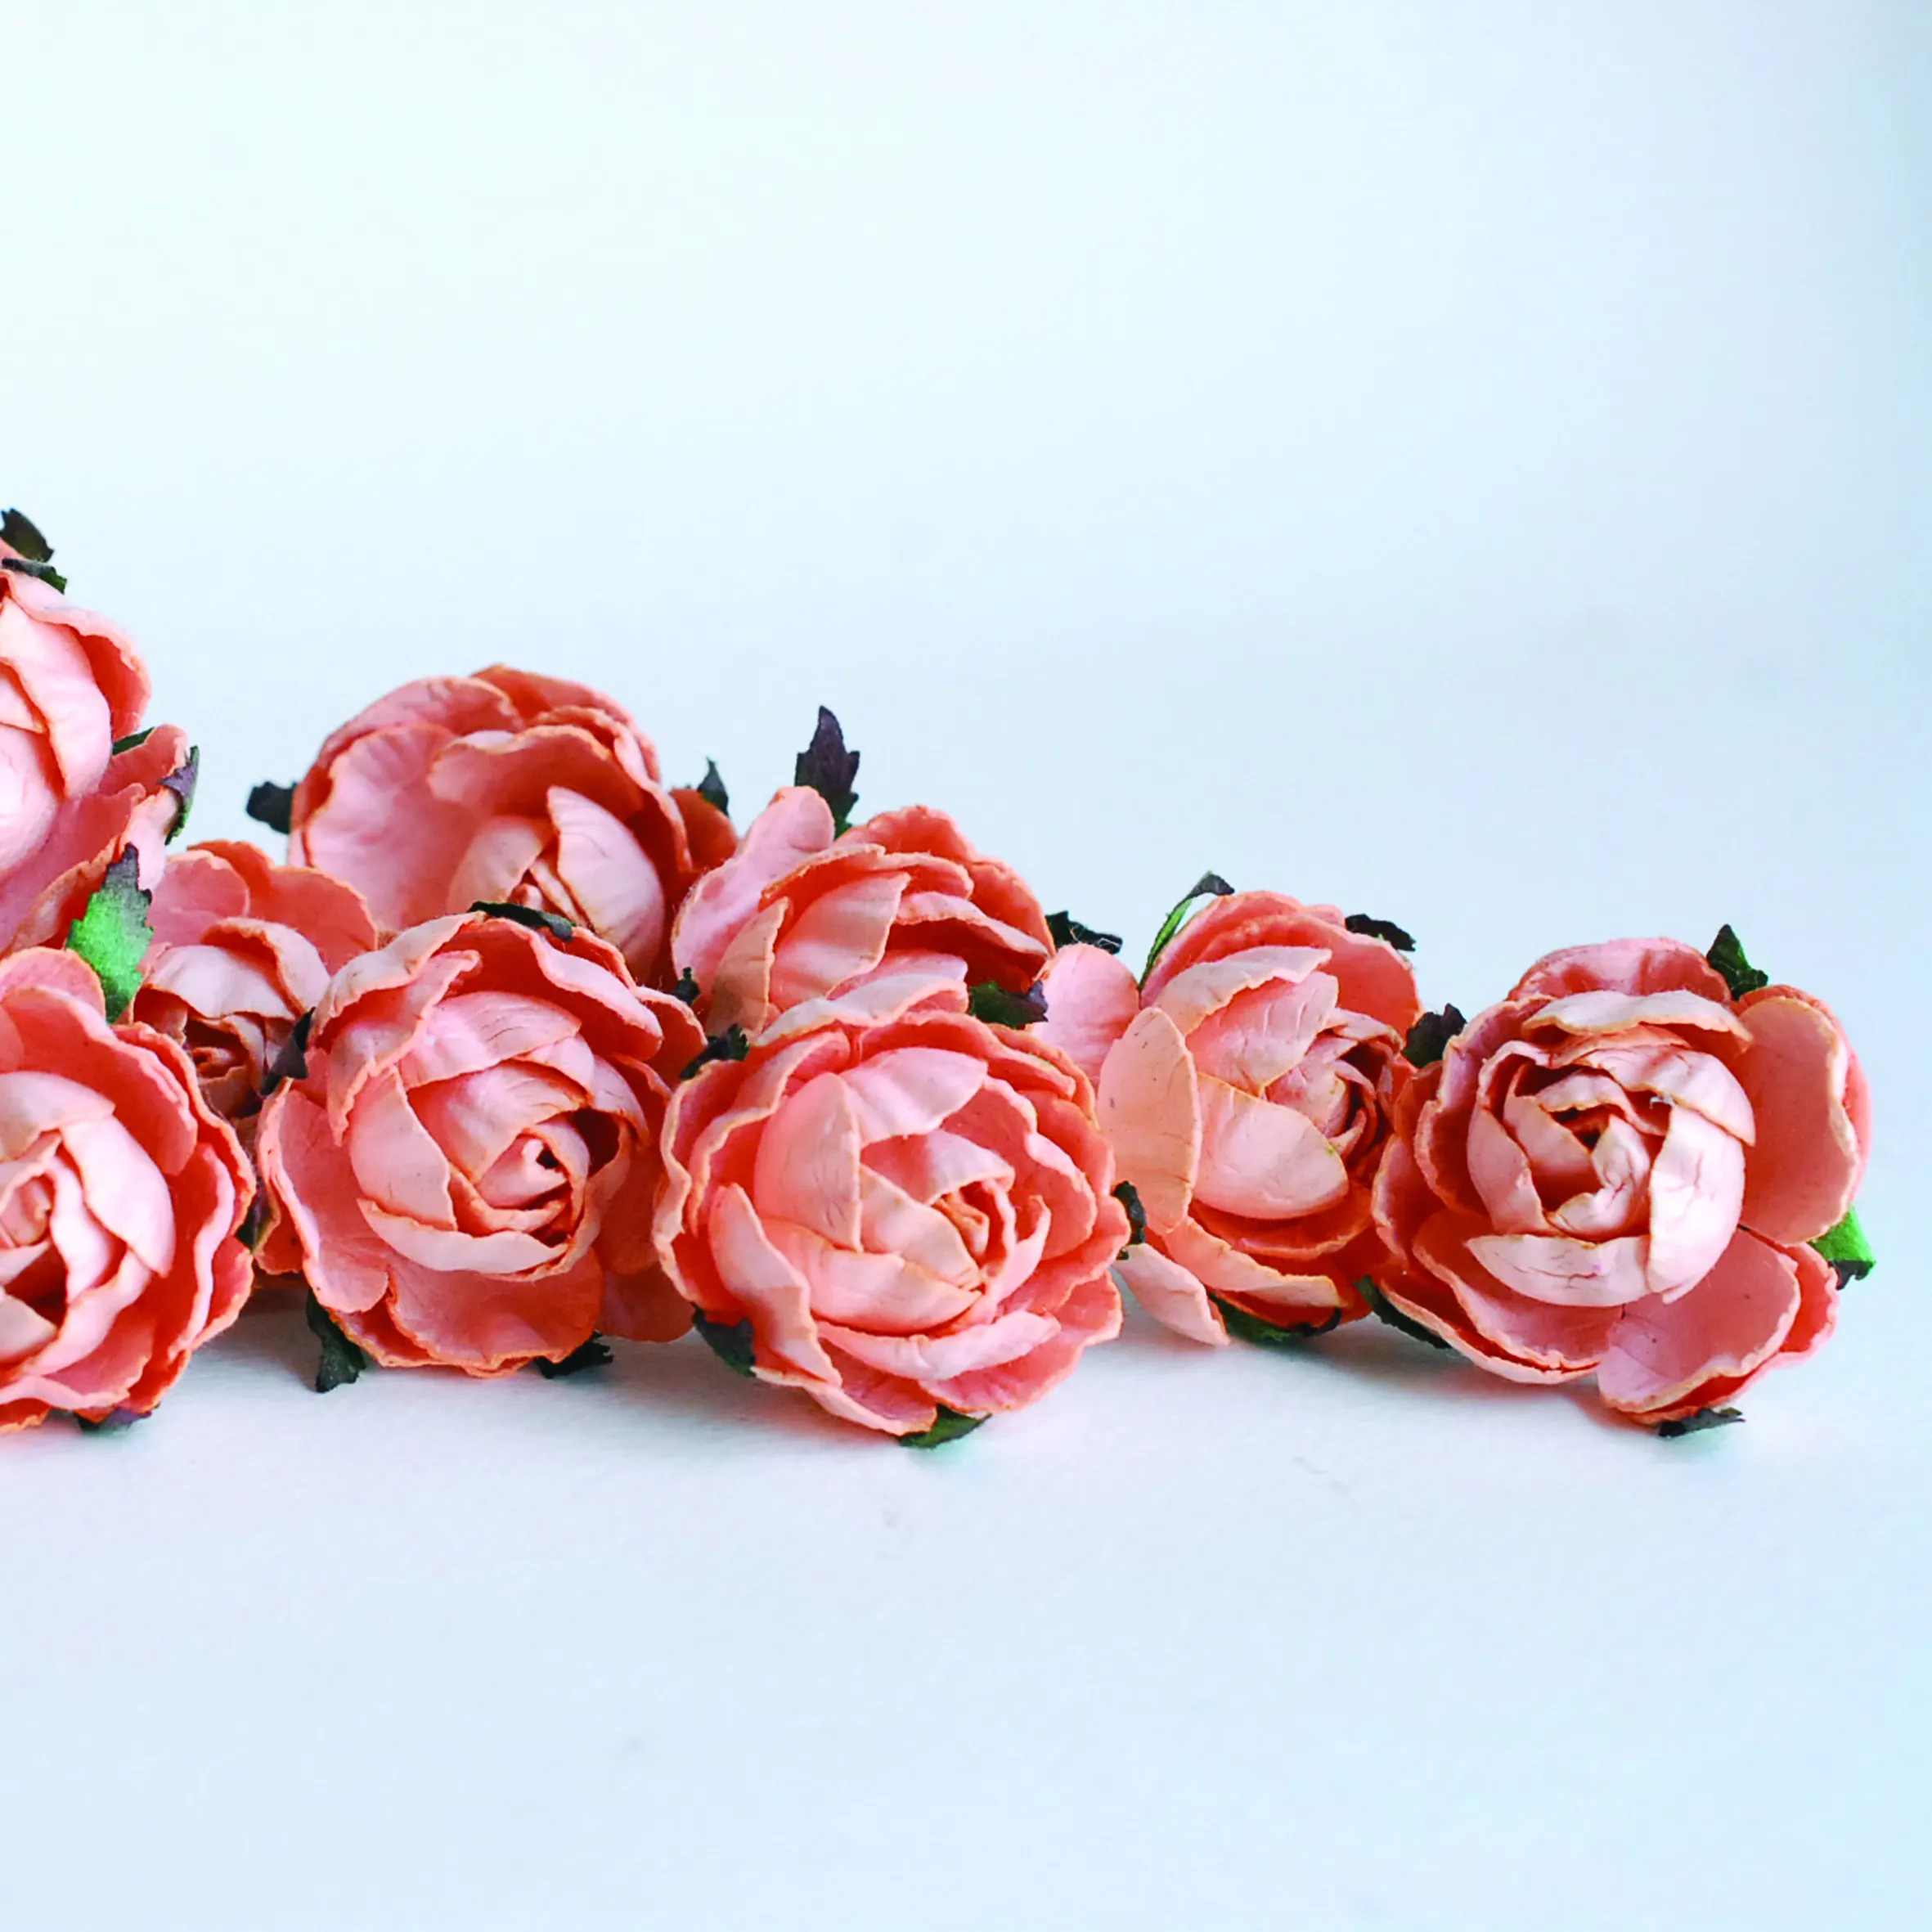 ดอกโบตั๋นดอกกุหลาบกระดาษแบบทำมือของขวัญตกแต่งดอกโบตั๋นดอกโบตั๋นตัดดอกไม้ประดิษฐ์งานแต่งงาน